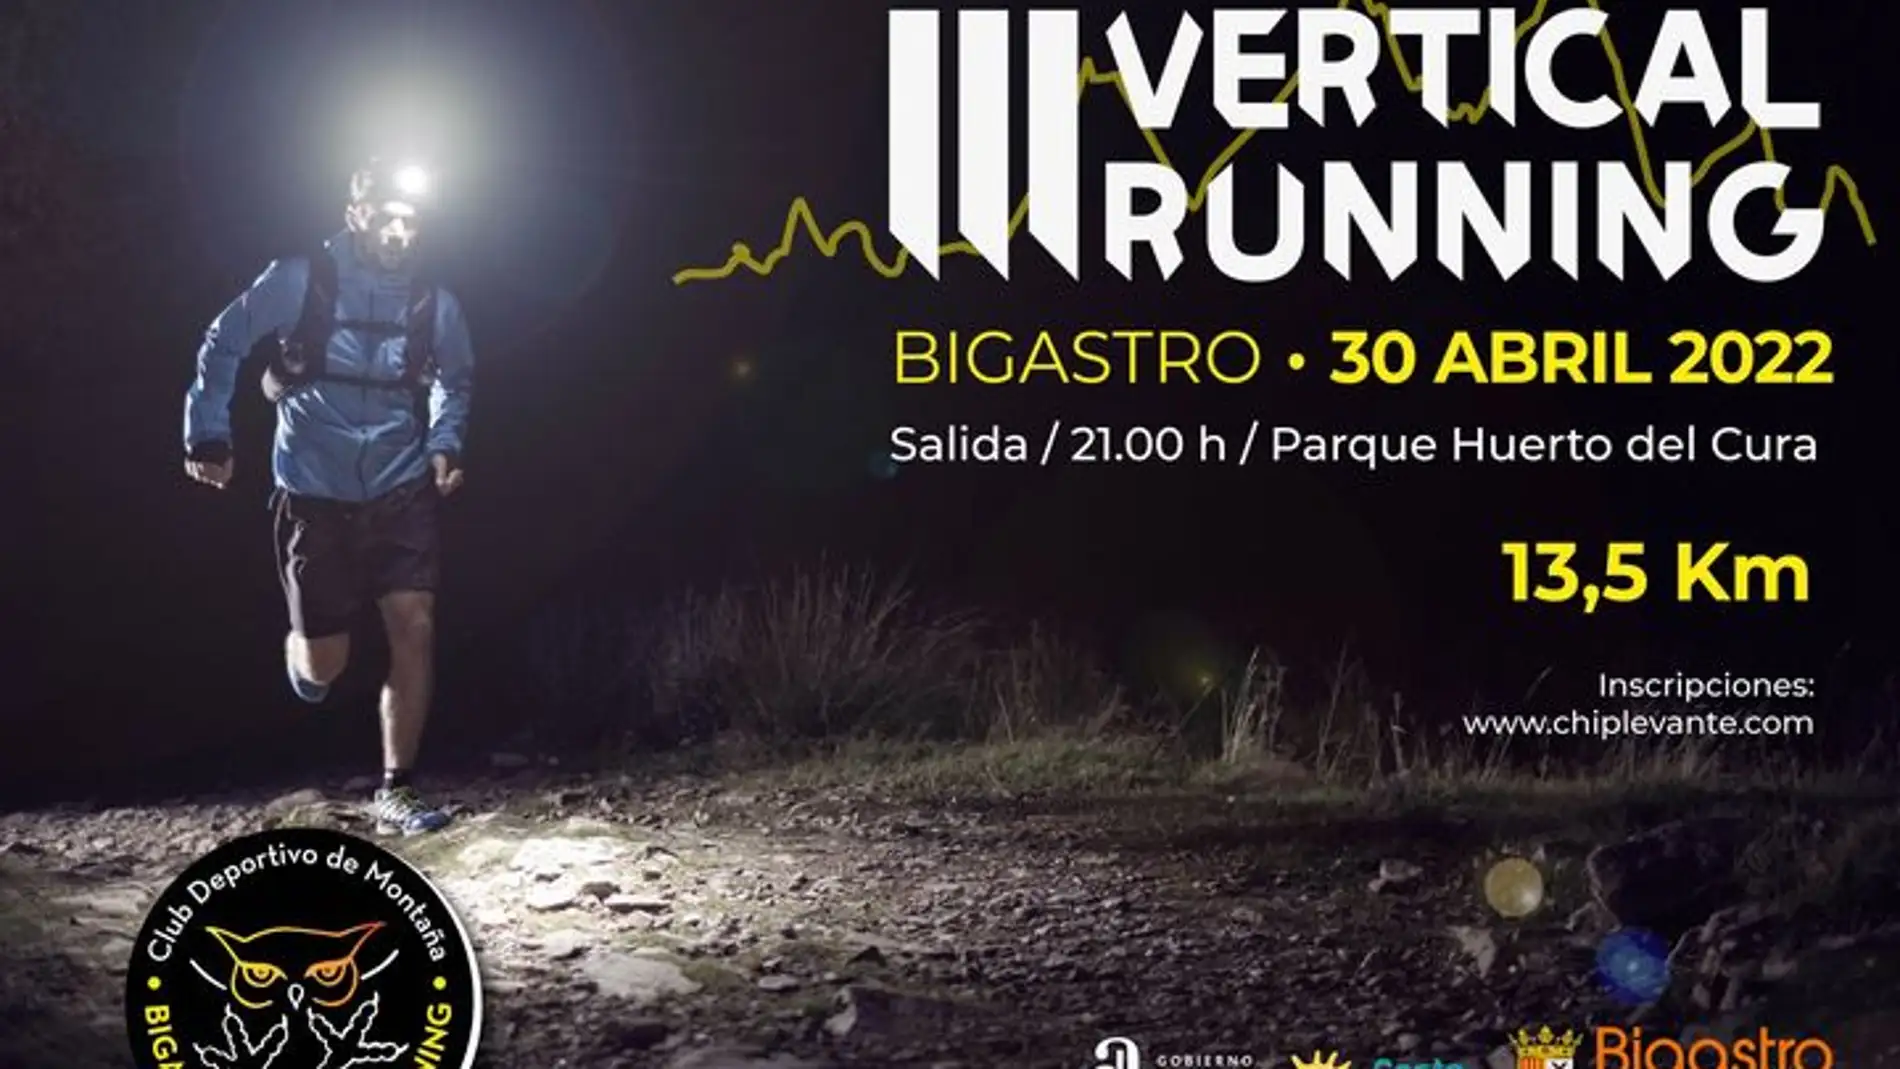 La III Vertical Running de Bigastro tendrá lugar el próximo sábado, 30 de abril   